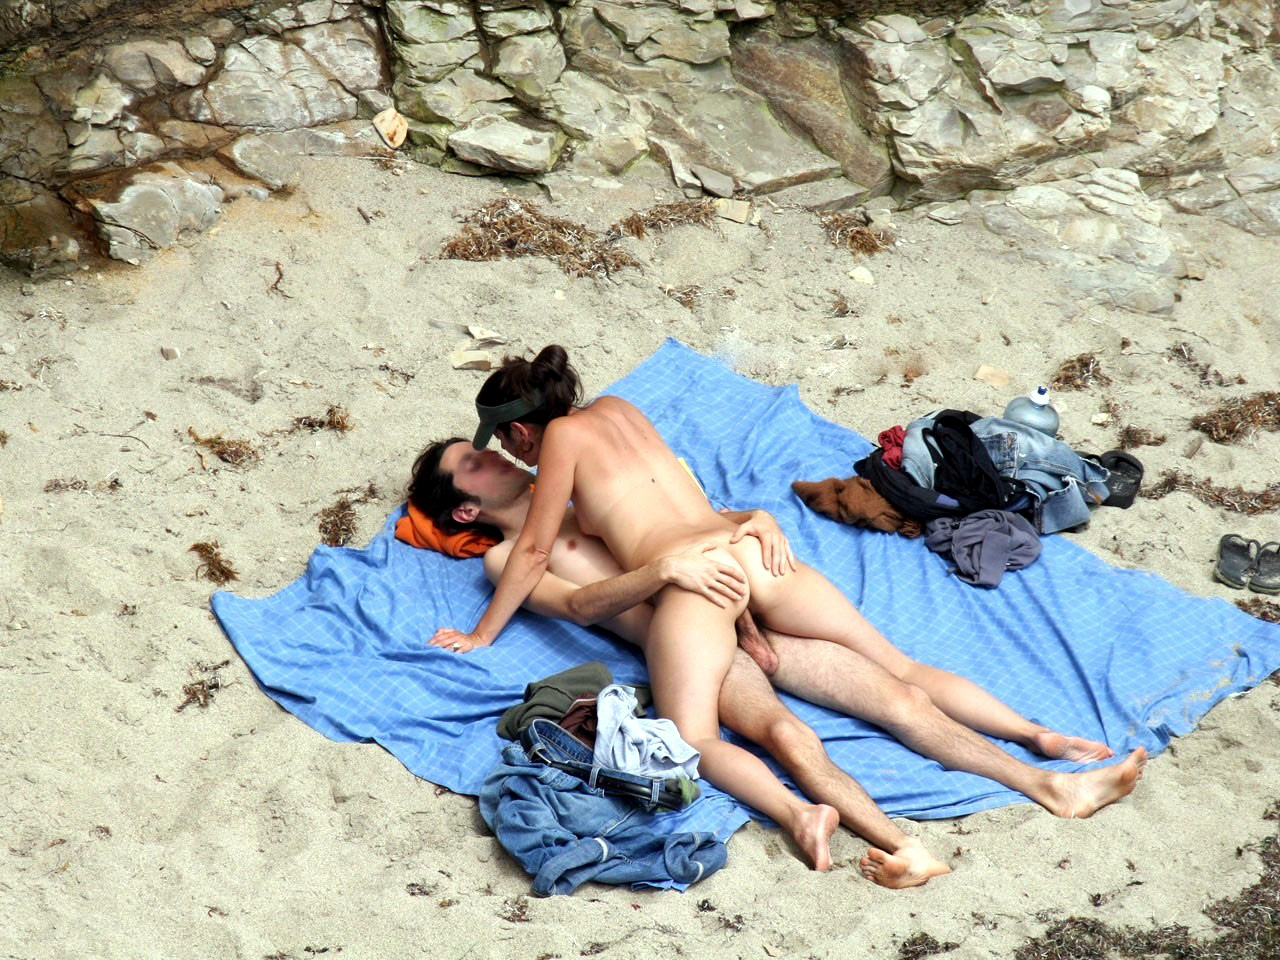 Sex On Spy Cam Beach - Hidden Camera Beach Sex | Sex Pictures Pass